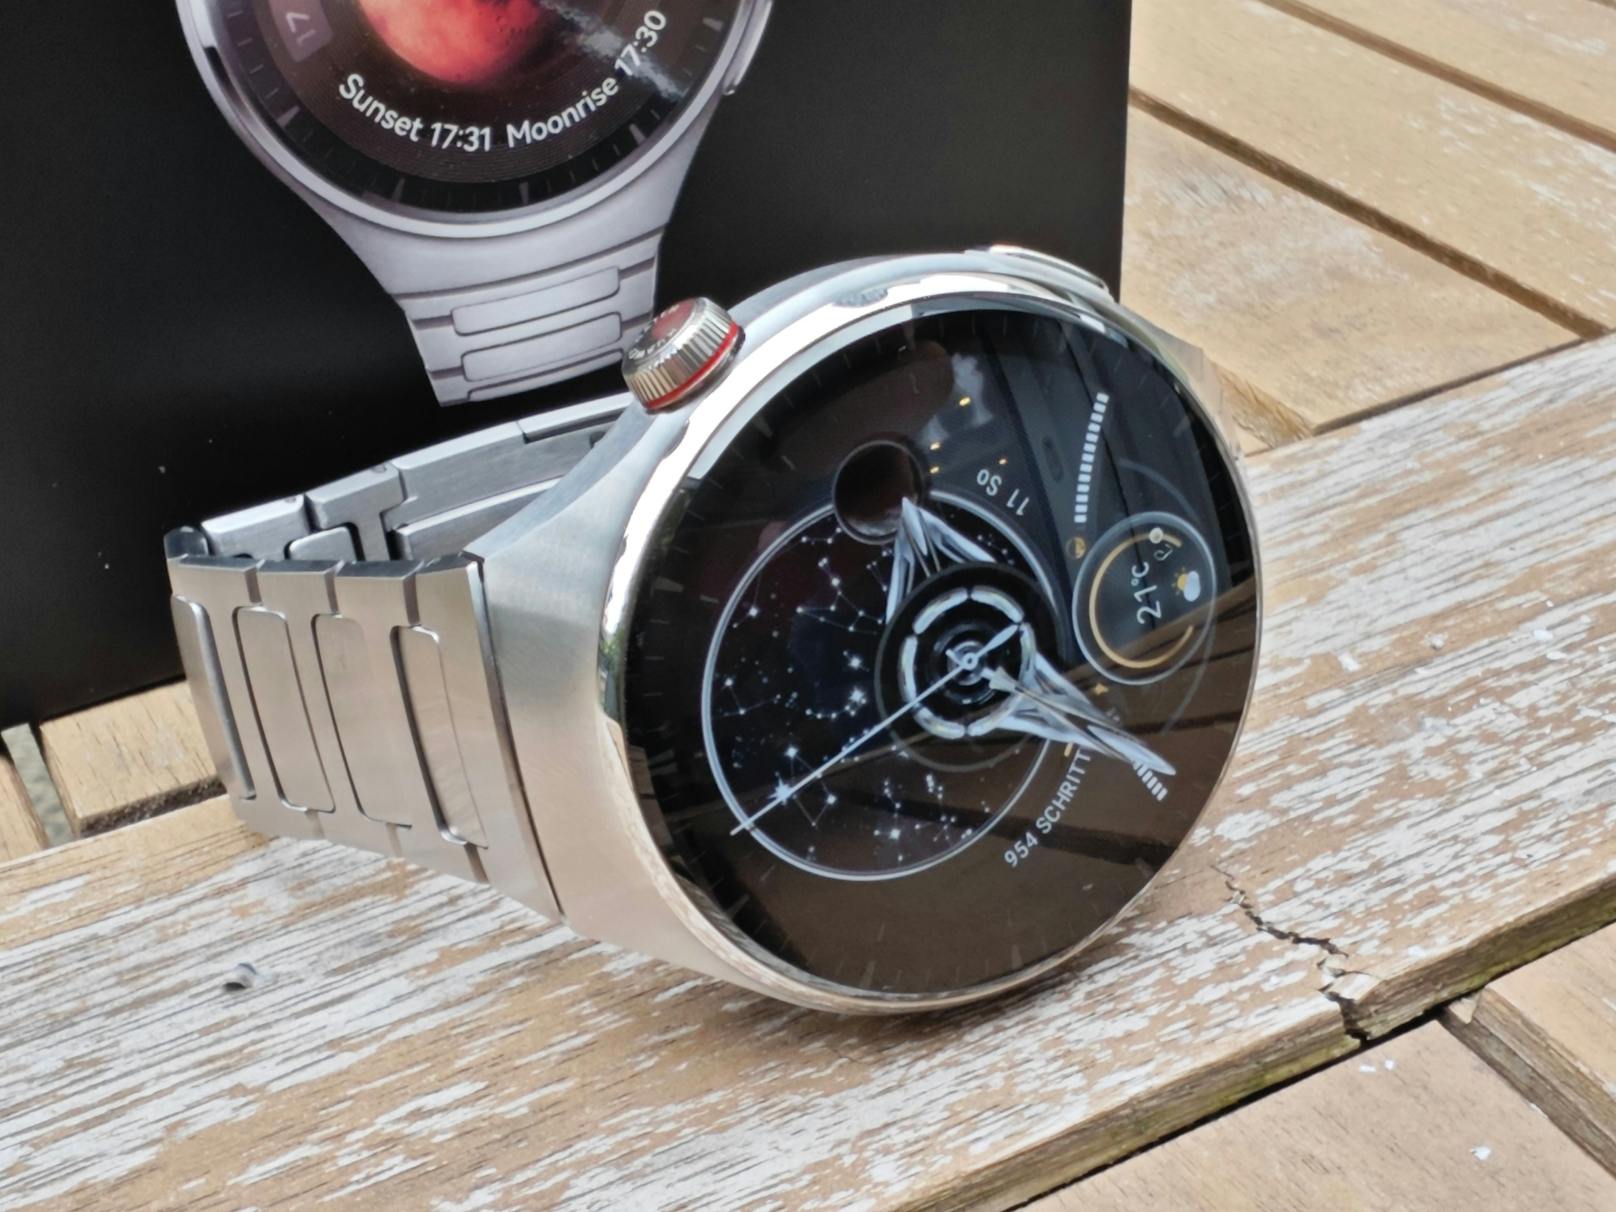 ...noch größere Display. Mit der Huawei Watch 4 bekommt man das volle Uhren-Gesamtpaket – mehr Smartwatch geht gar nicht mehr.